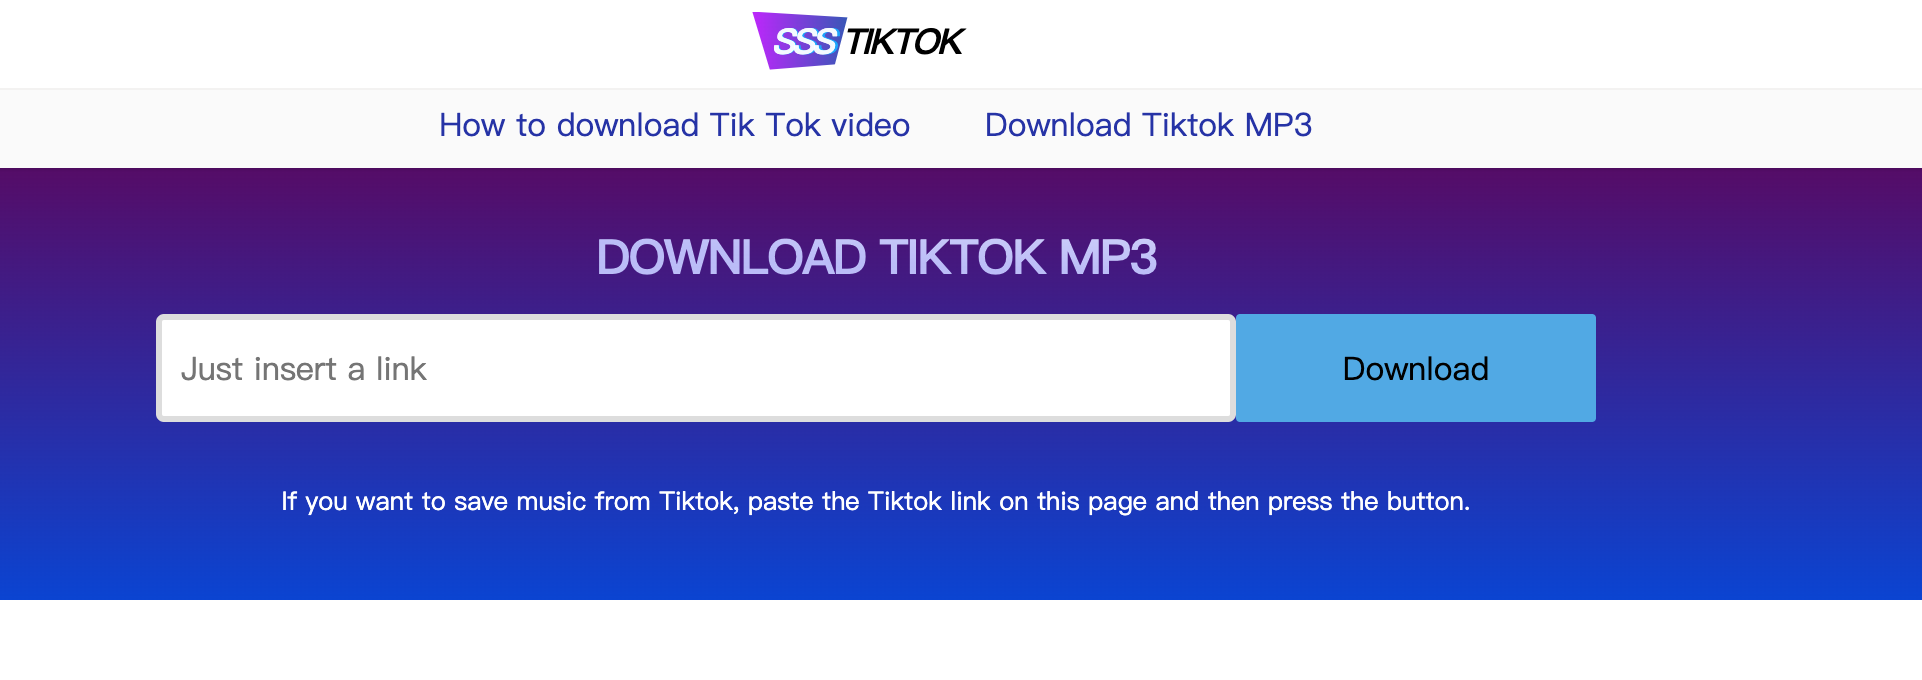 Save from tiktok audio